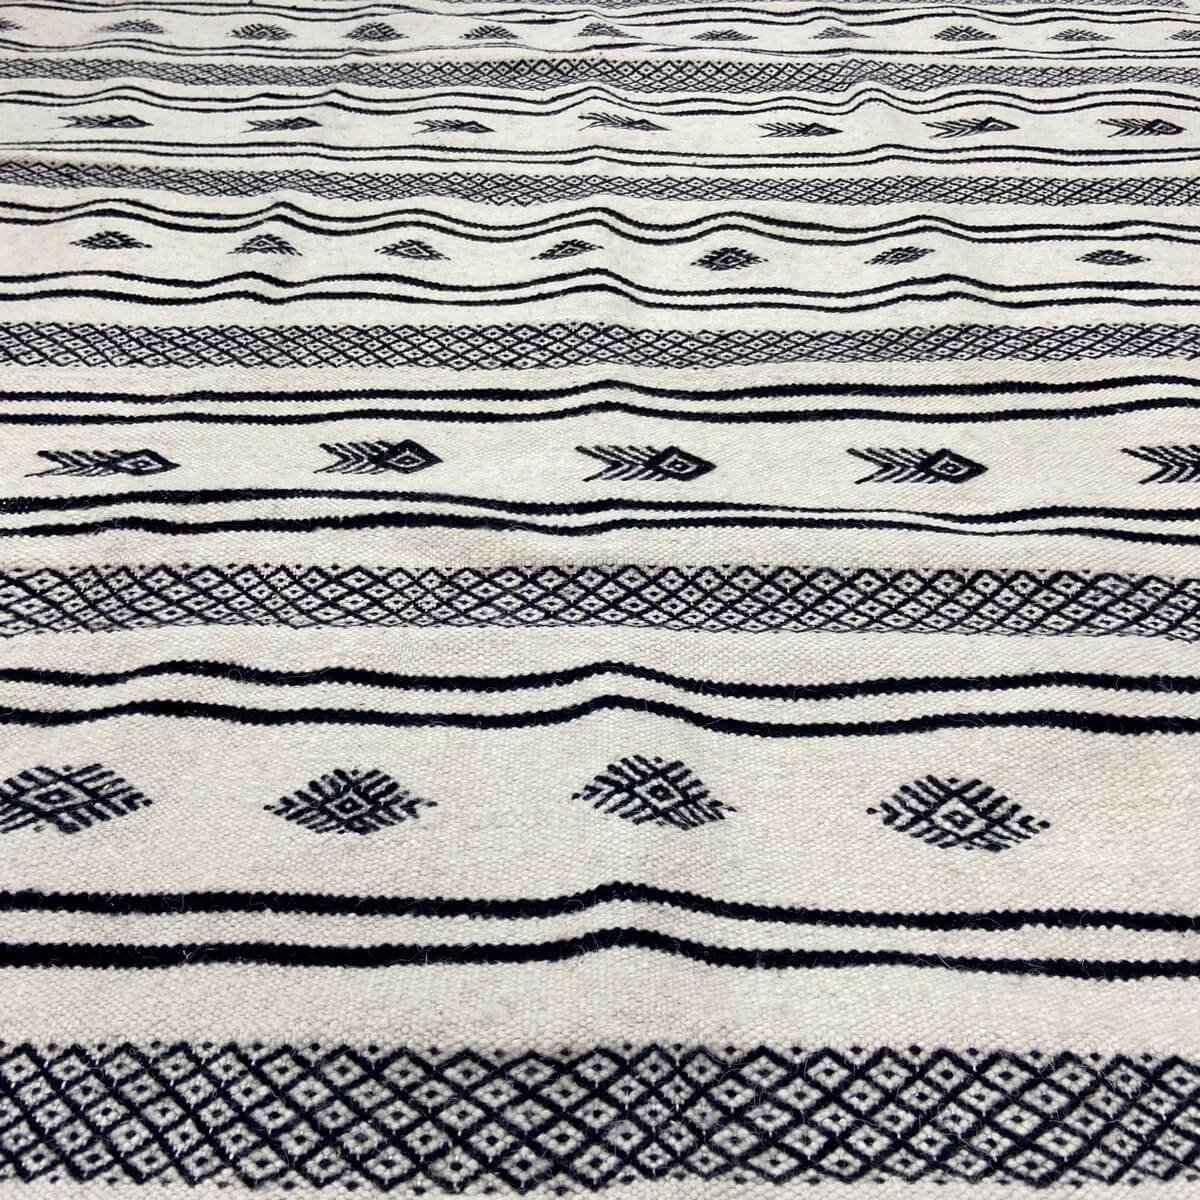 Tapete berbere Tapete Kilim Tizwa 138x255 cm Preto e Branco (Tecidos à mão, Lã, Tunísia) Tapete tunisiano kilim, estilo marroqui